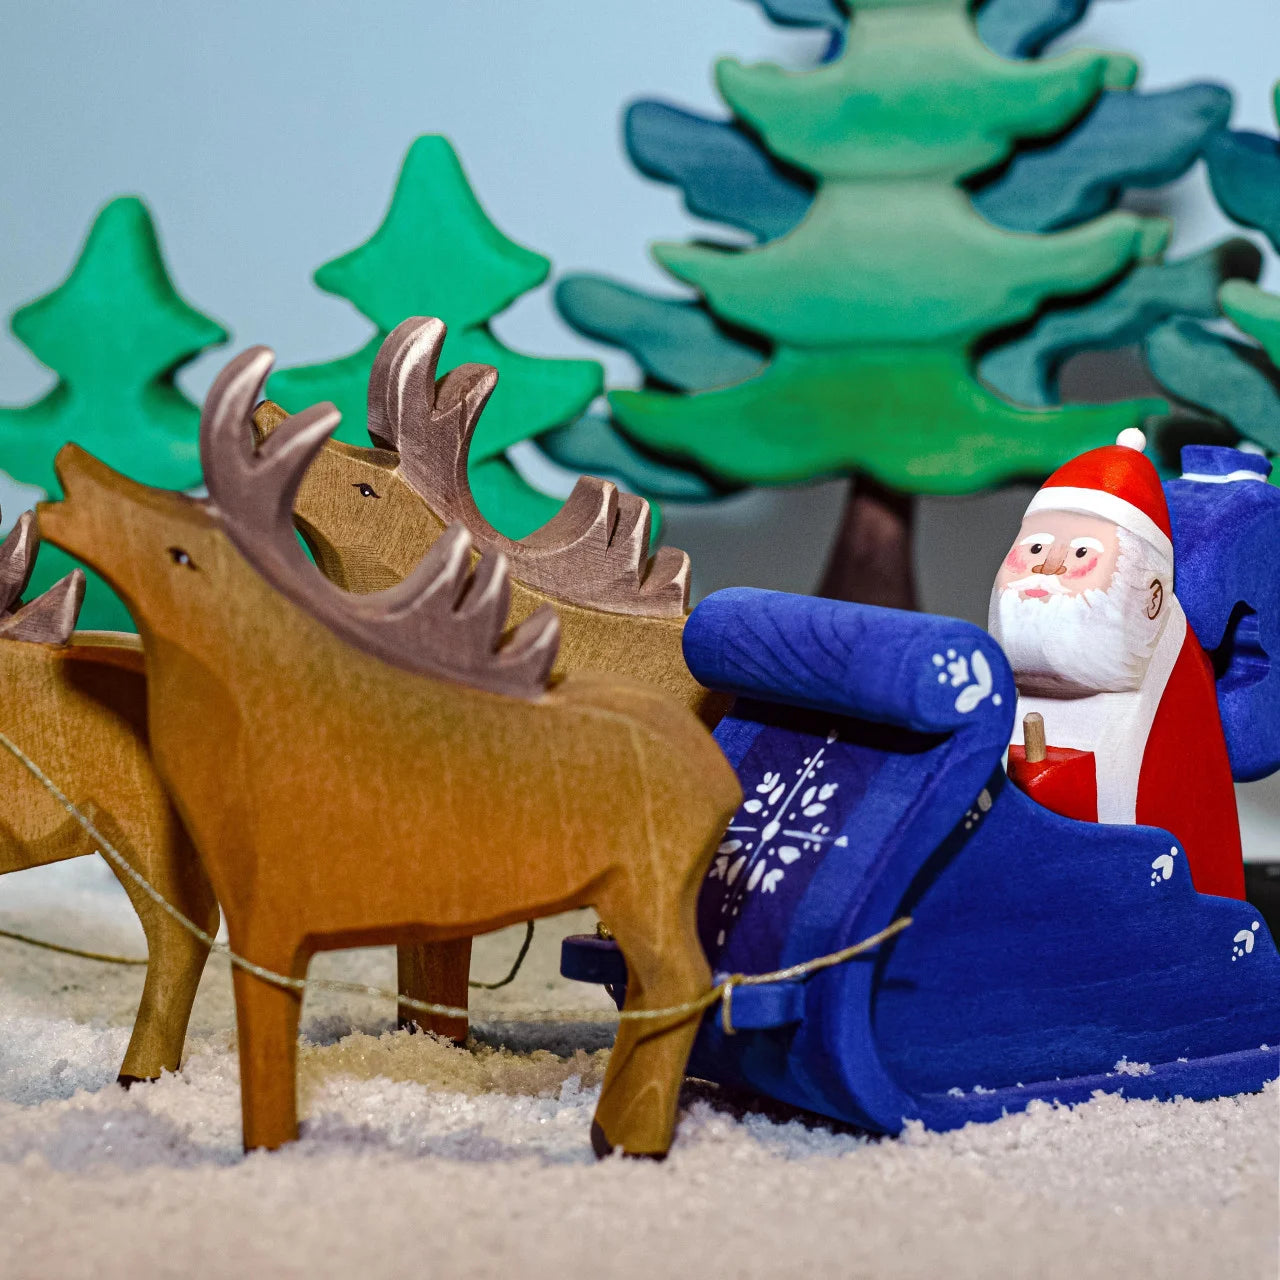 Bumbu Toys Santa Claus, Sleigh and Reindeer Set